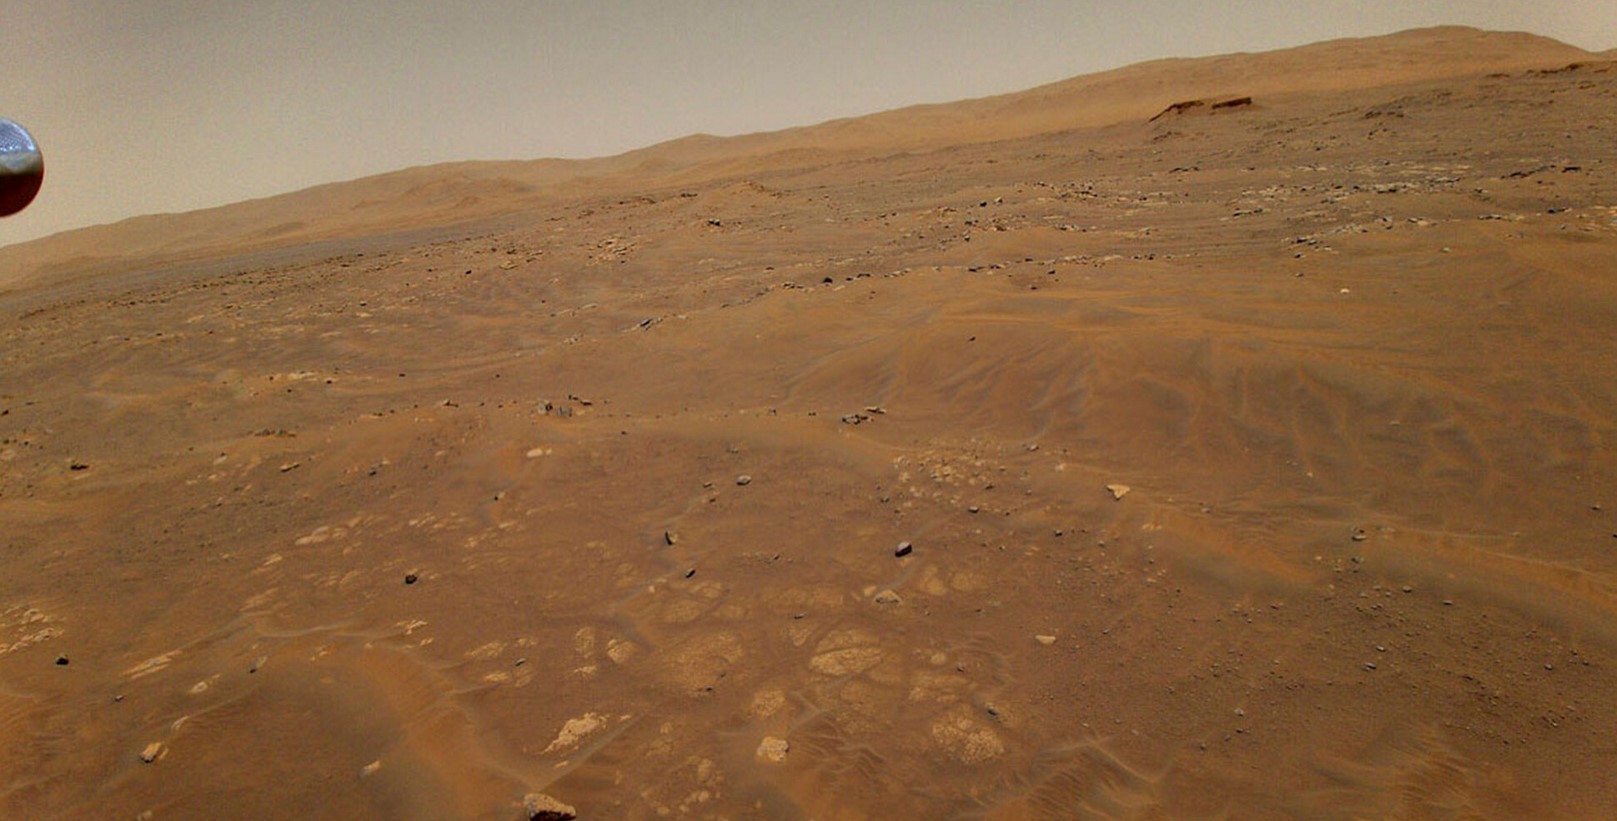 Misterul lui Marte se adâncește pe măsură ce semnalele sale radar neobișnuite nu se găsesc în apă: ce se pregătește pe planeta roșie? 1